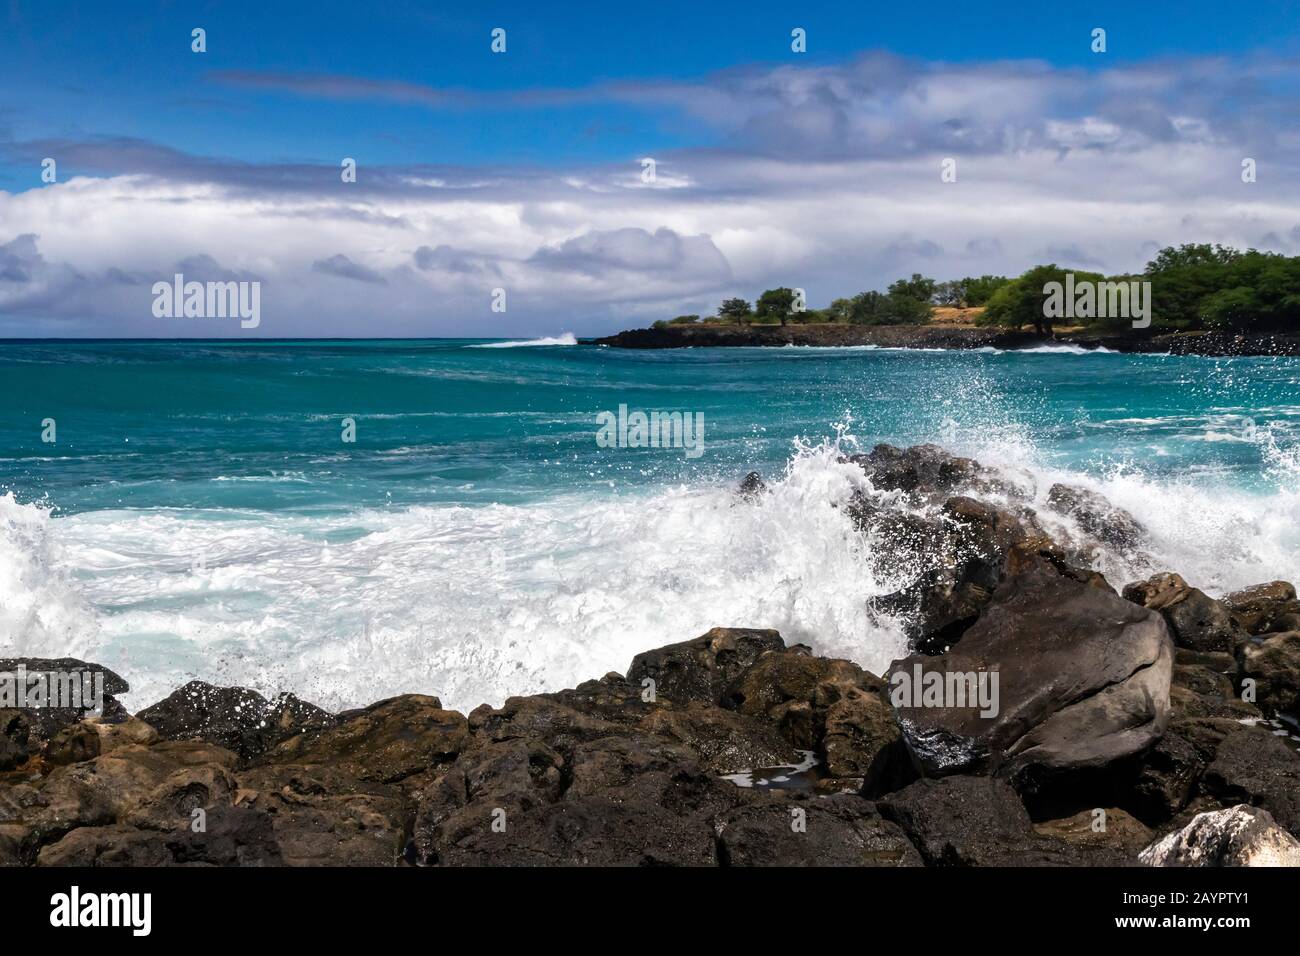 Infrangere le onde sulla costa ruvida della costa di Kona, sulla Big Island delle Hawaii. Blu-verde oceano Pacifico oltre; costa rocciosa con alberi in lontananza. C Foto Stock